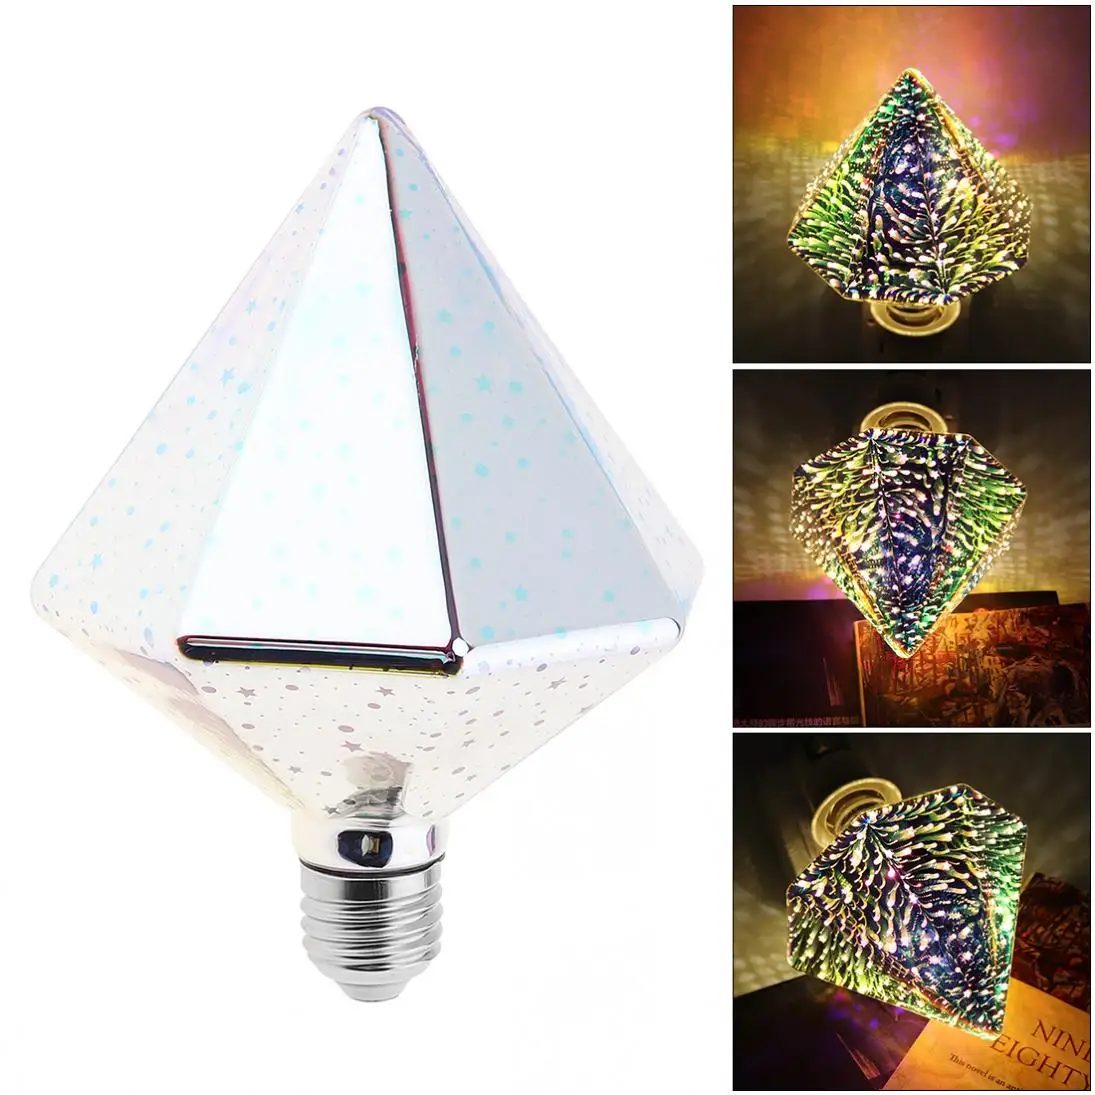 

Светодиодная лампочка 7 Вт, тип сверла, 3D украшение, лампочка фейерверка с углом свечения 360 градусов для рождества/праздника/украшения инте...